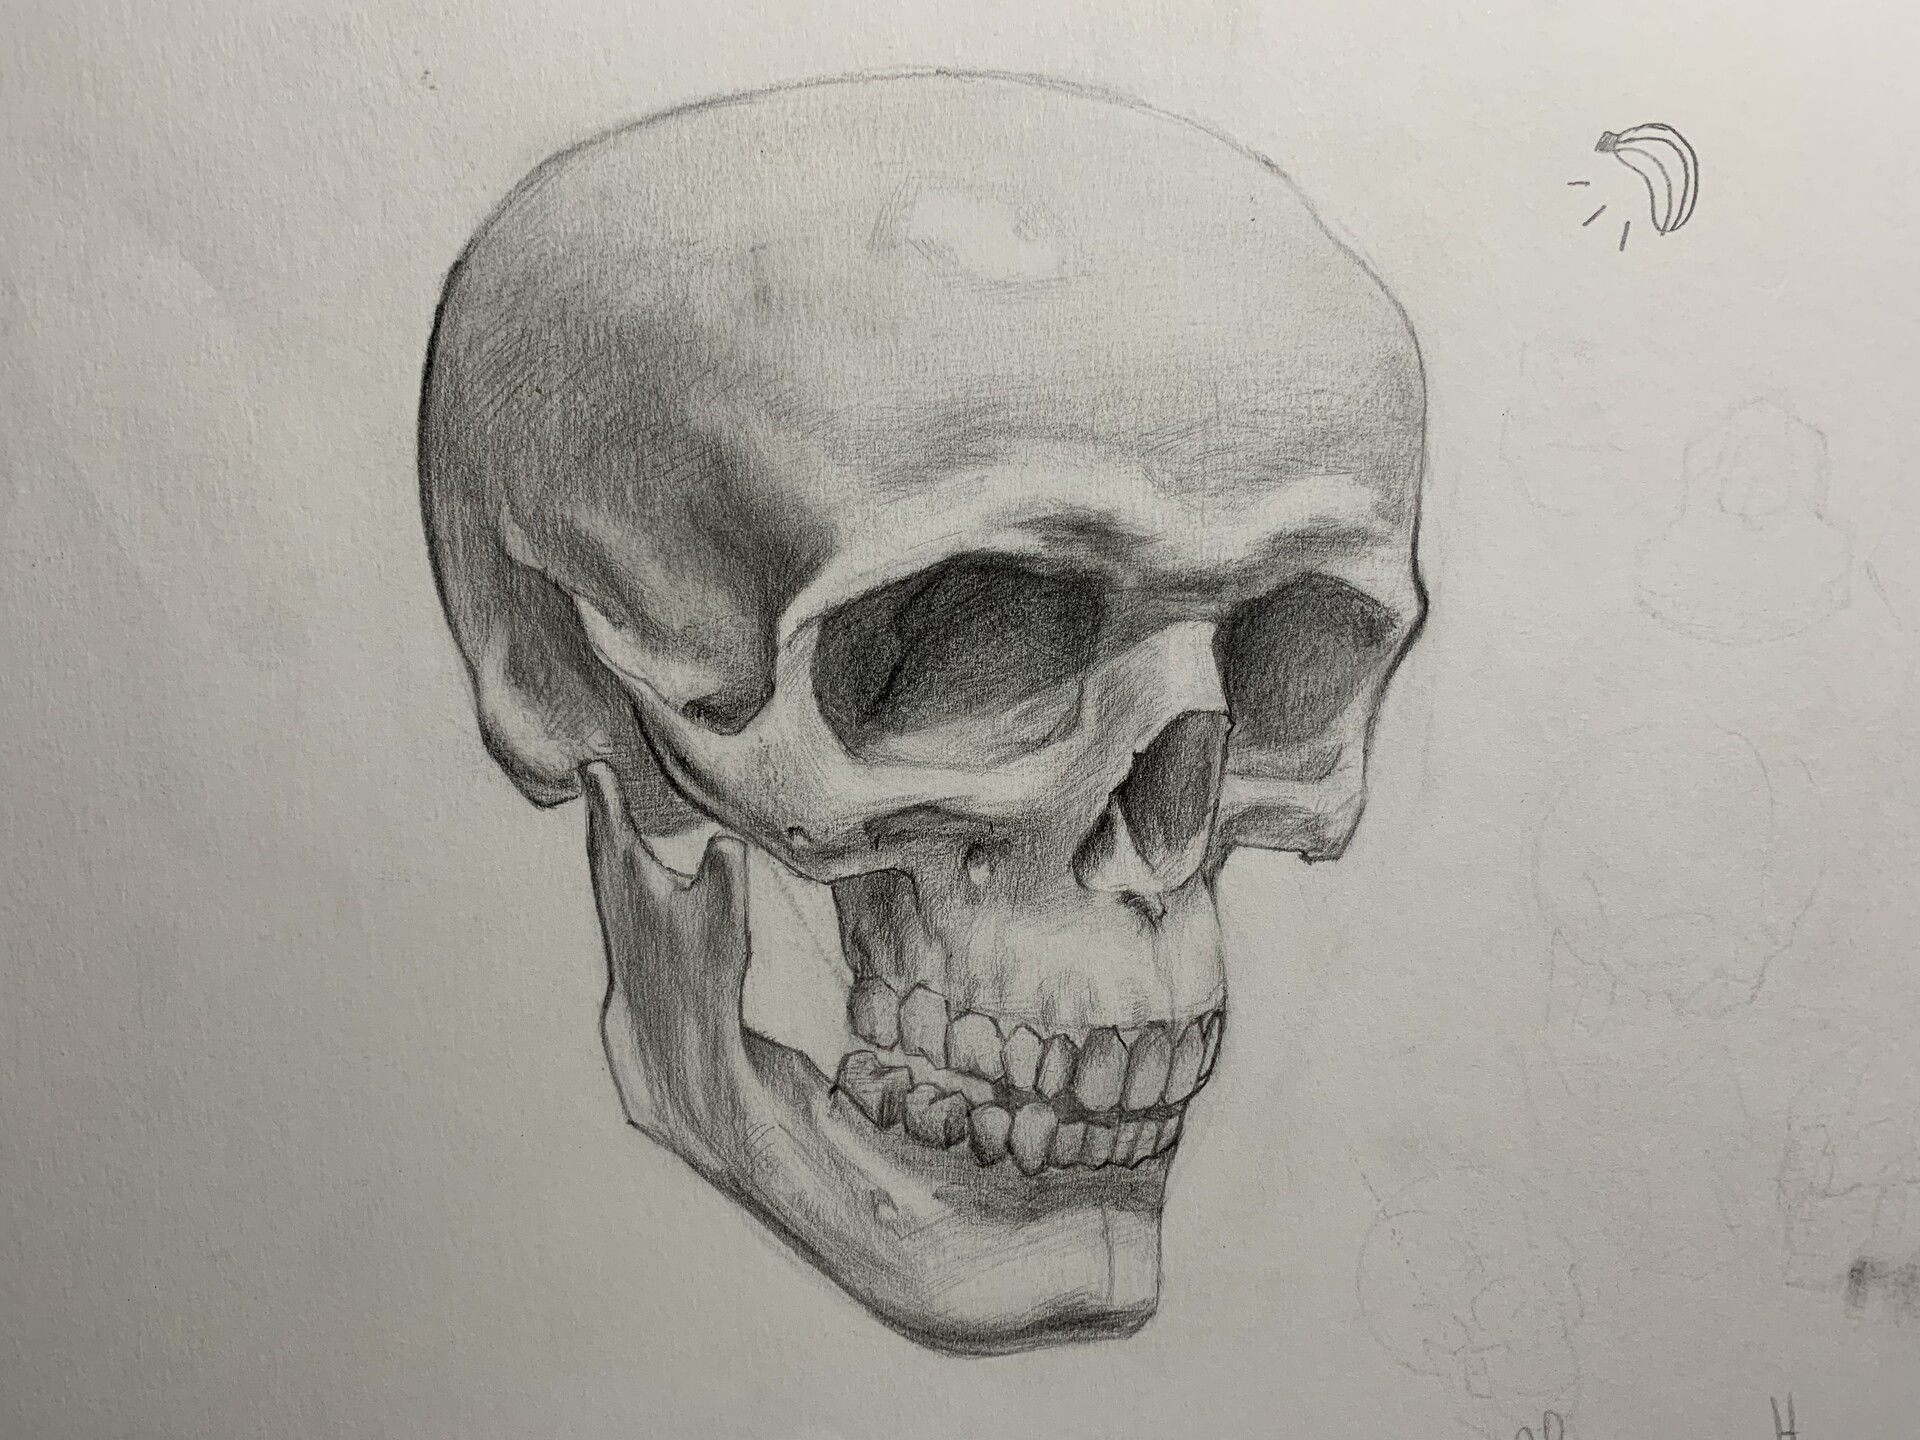 ArtStation - Skull study